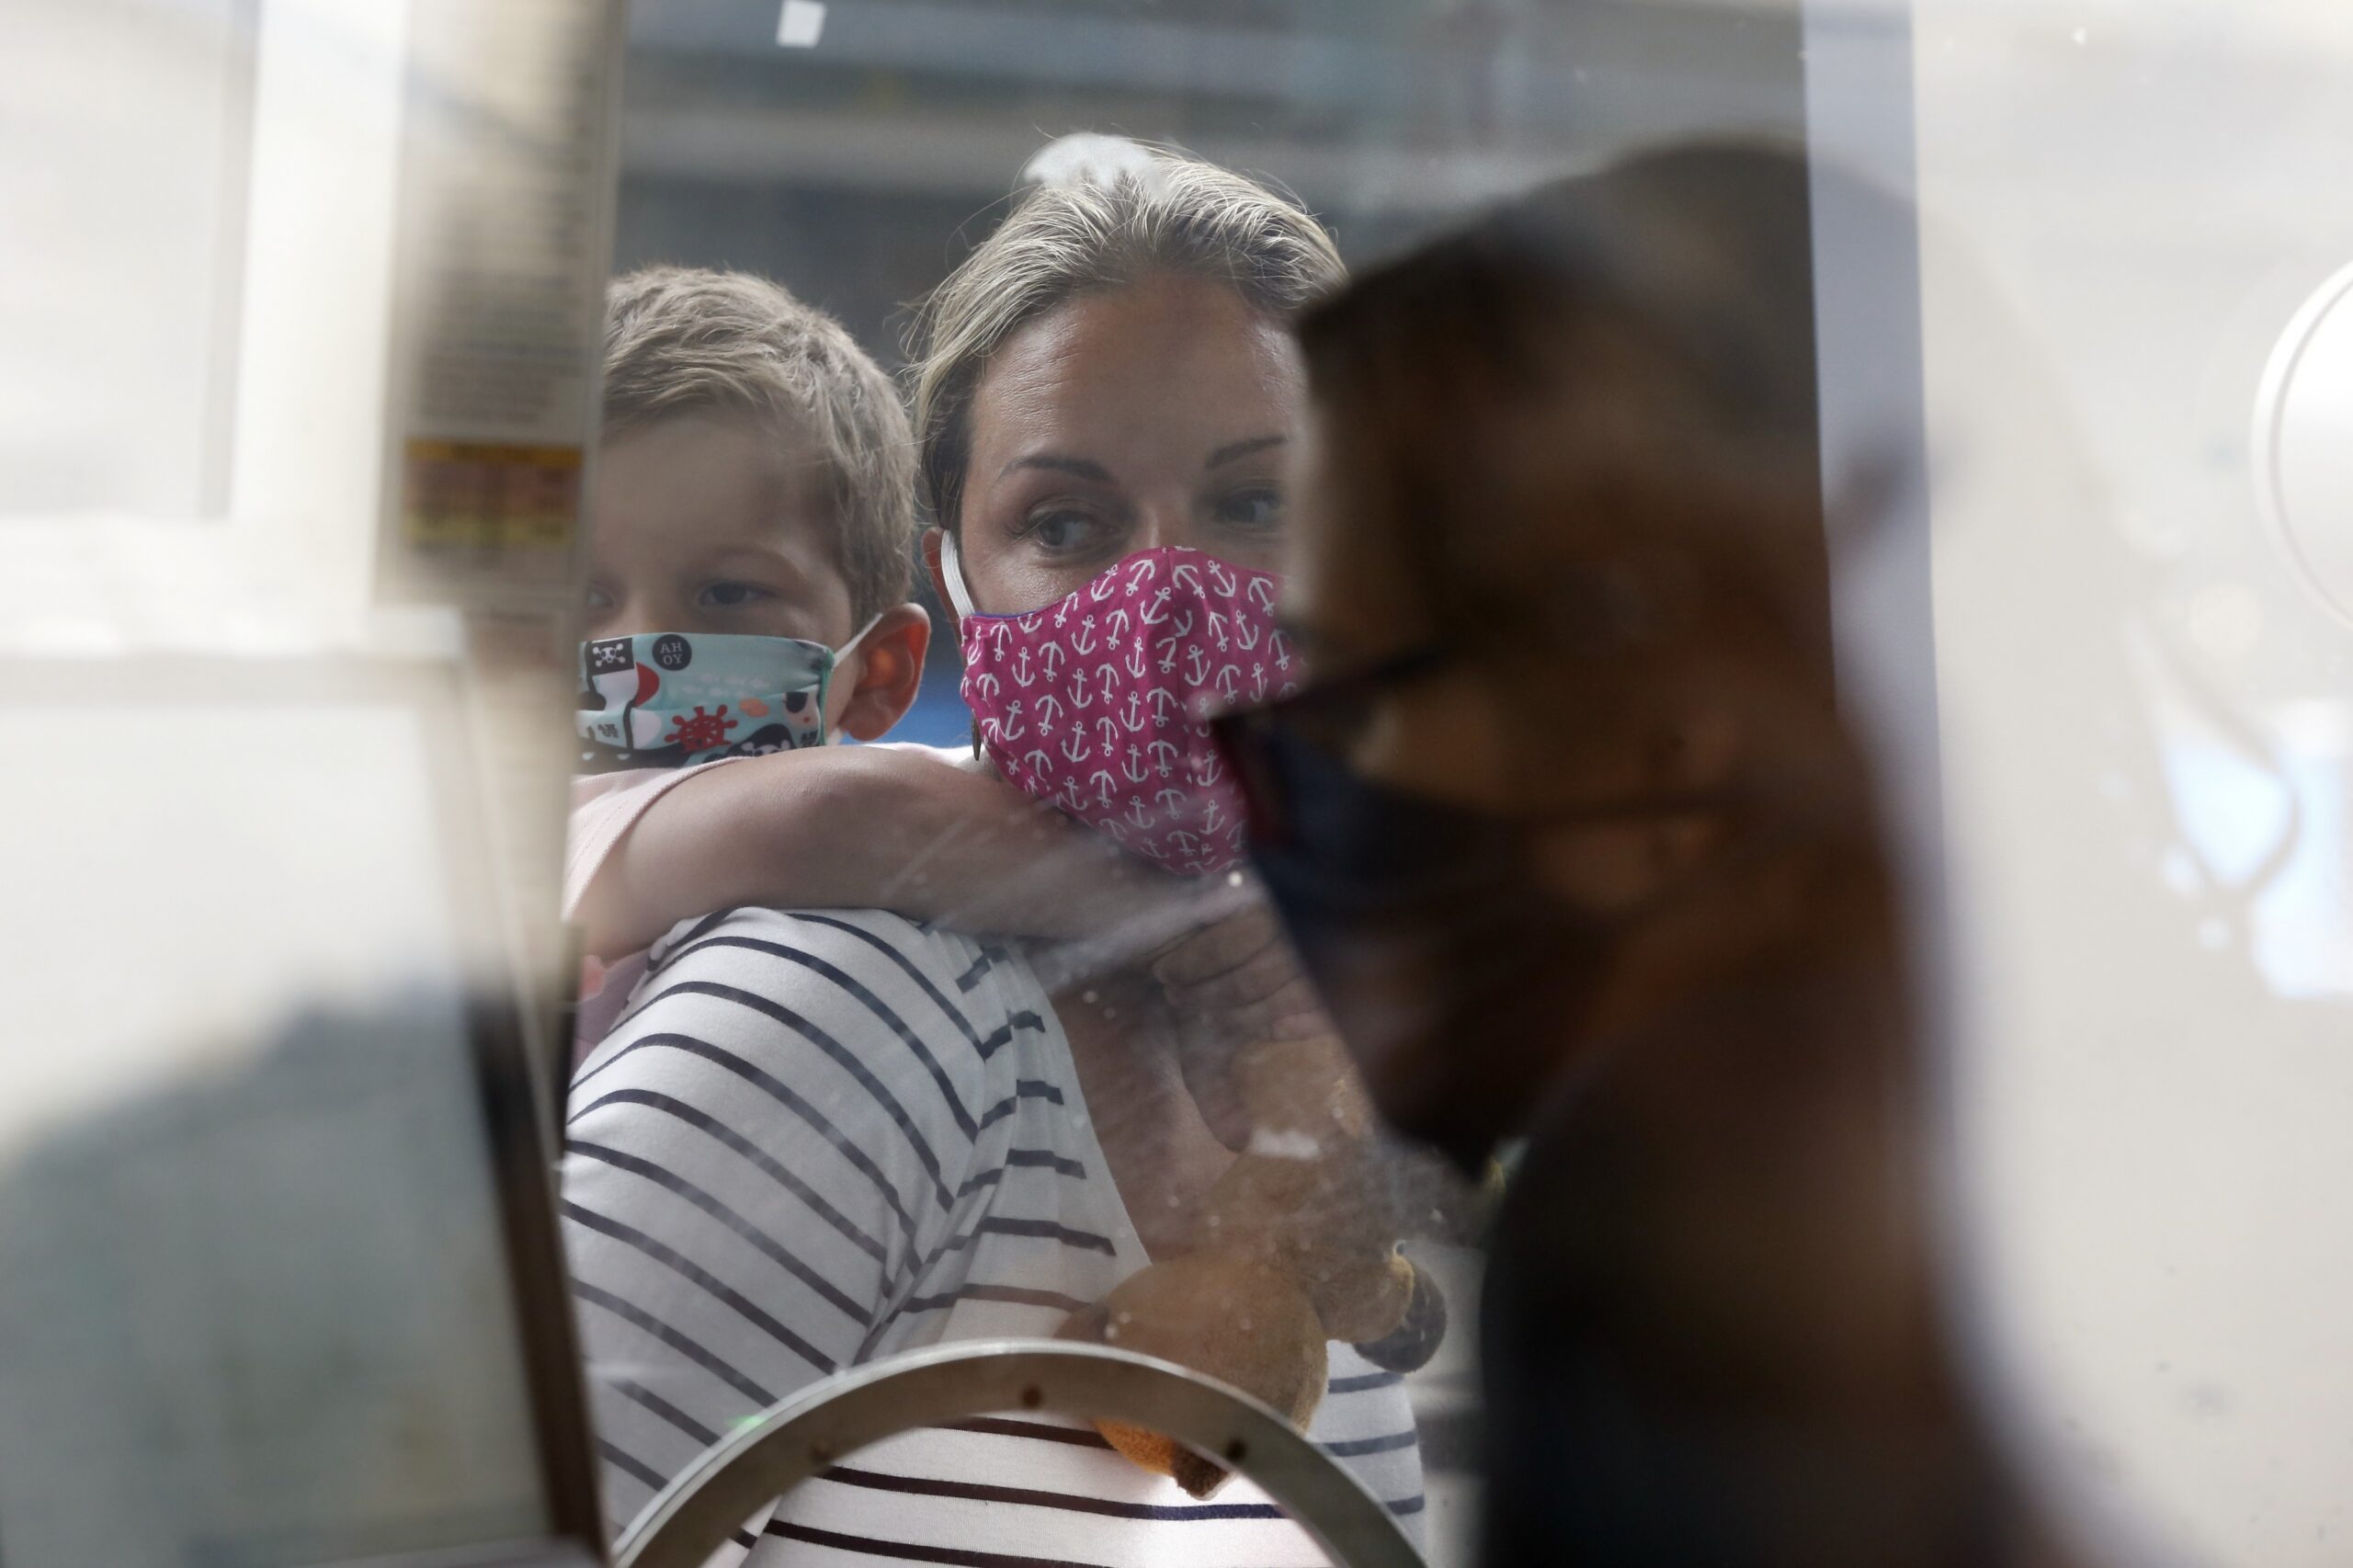 A woman wears a face mask at a Boston aquarium